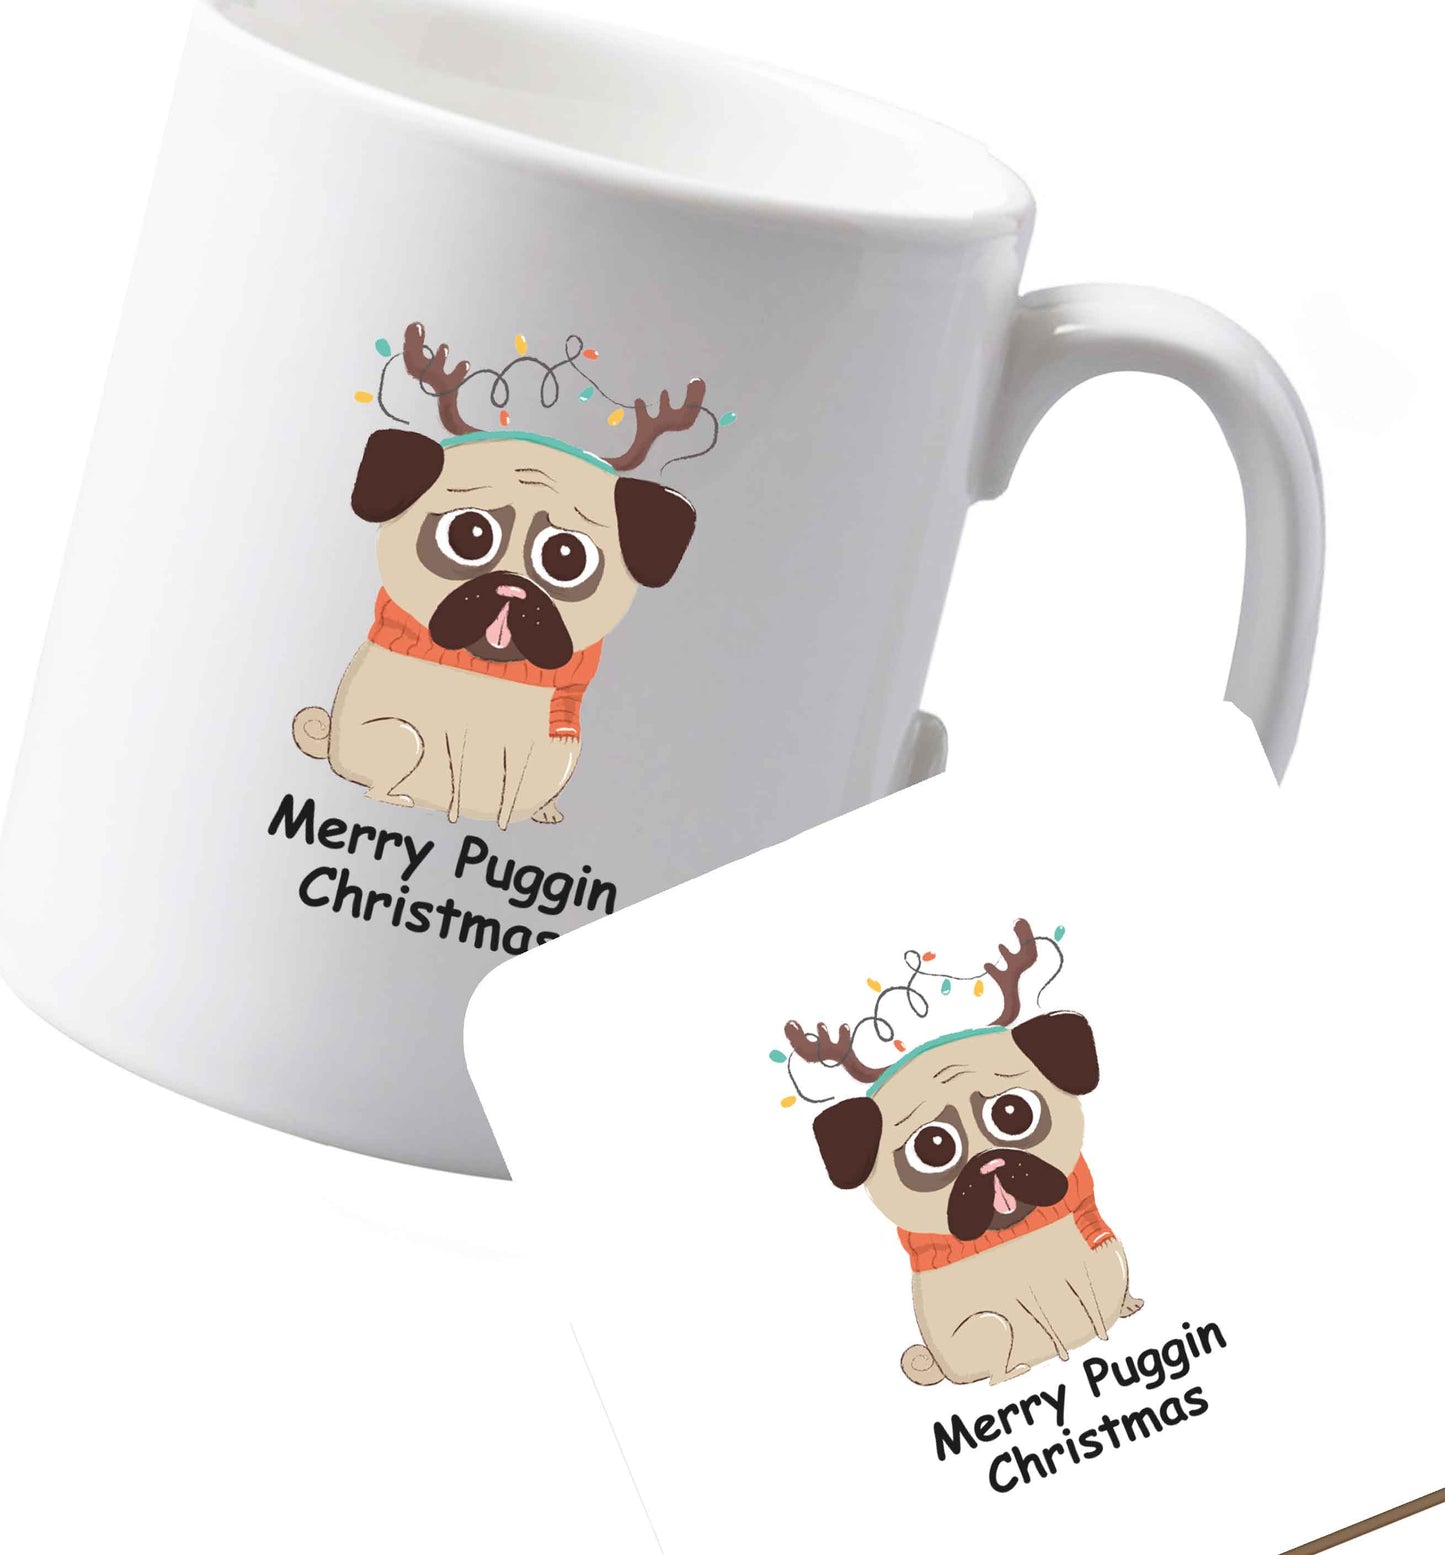 10 oz Ceramic mug and coaster Merry puggin' Chirstmas both sides